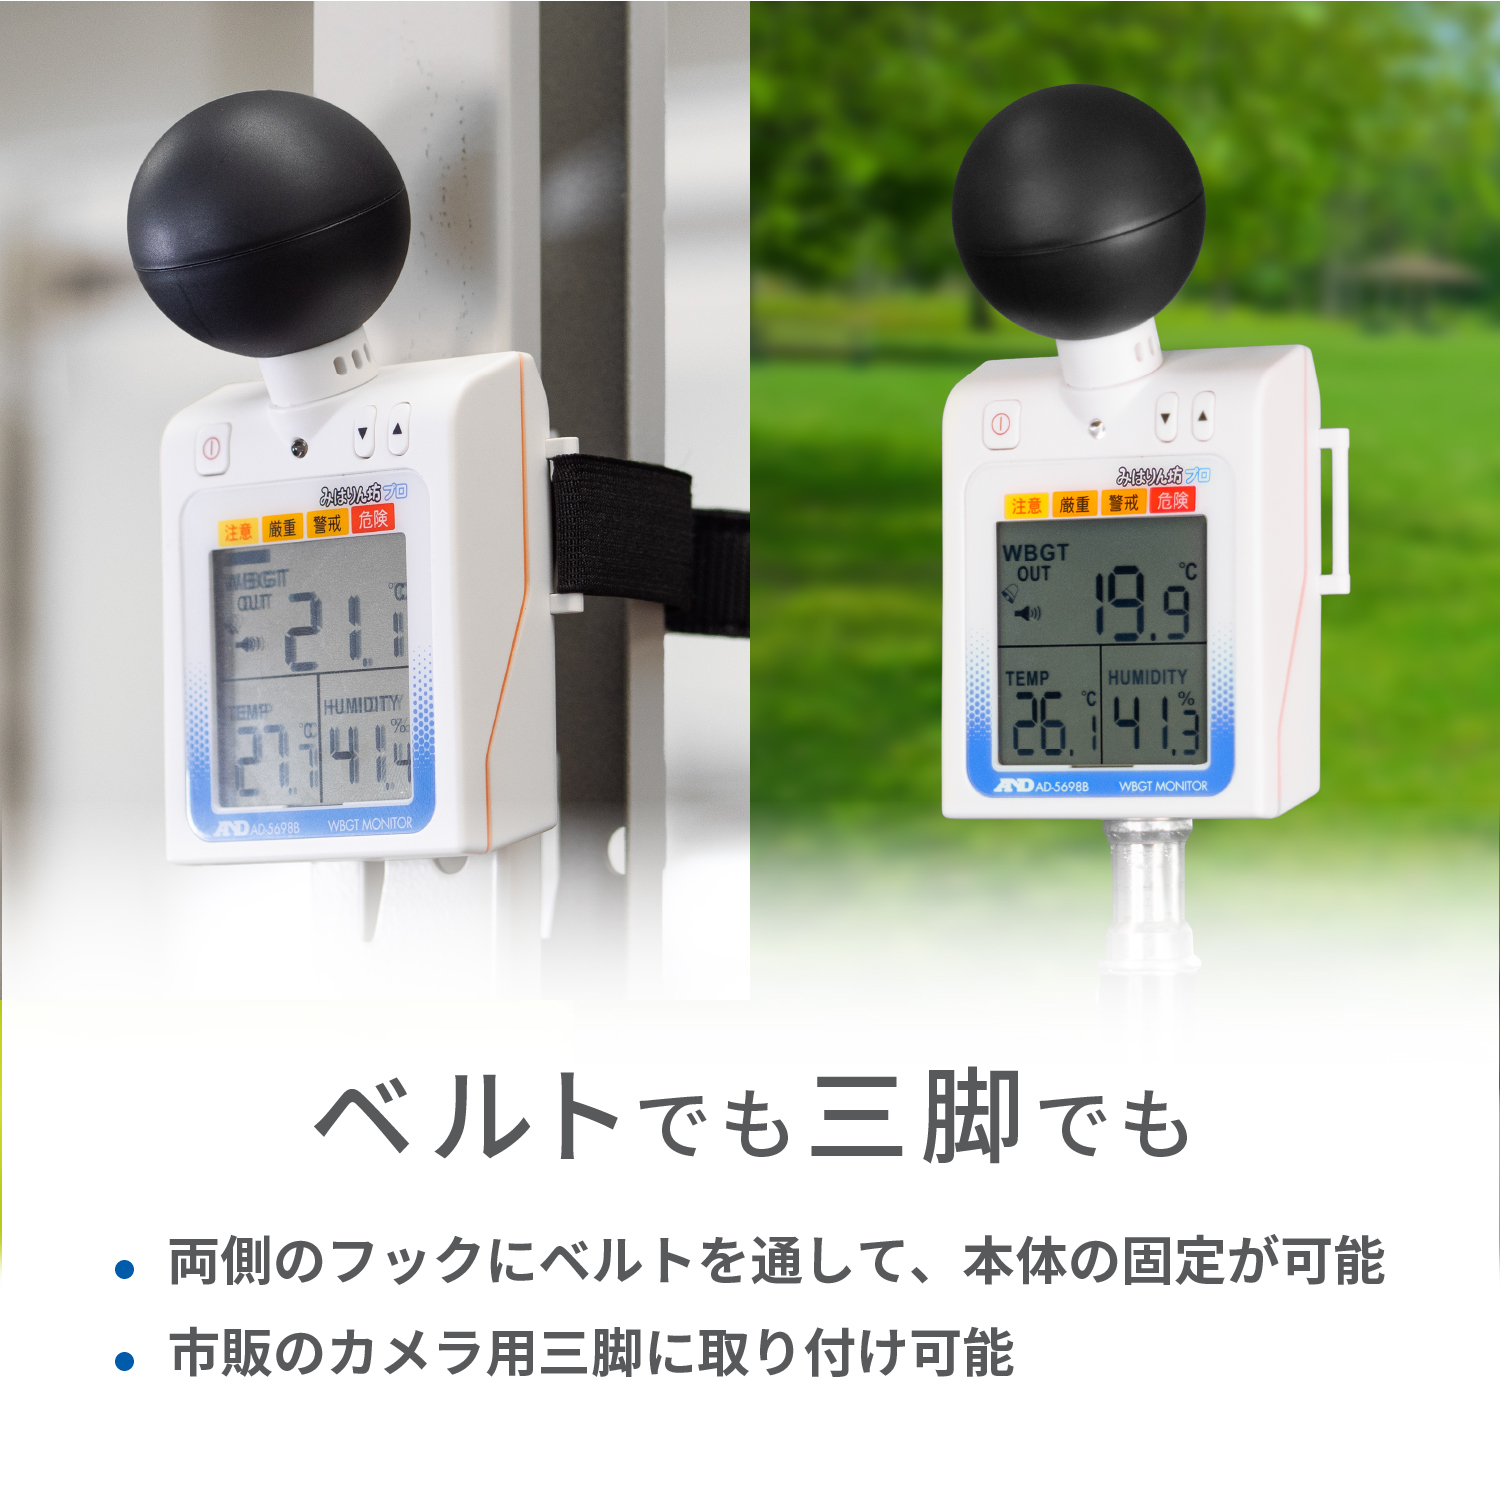 黒球付き熱中症指数計 / 熱中症指数モニター AD-5698B | 電子計測機器